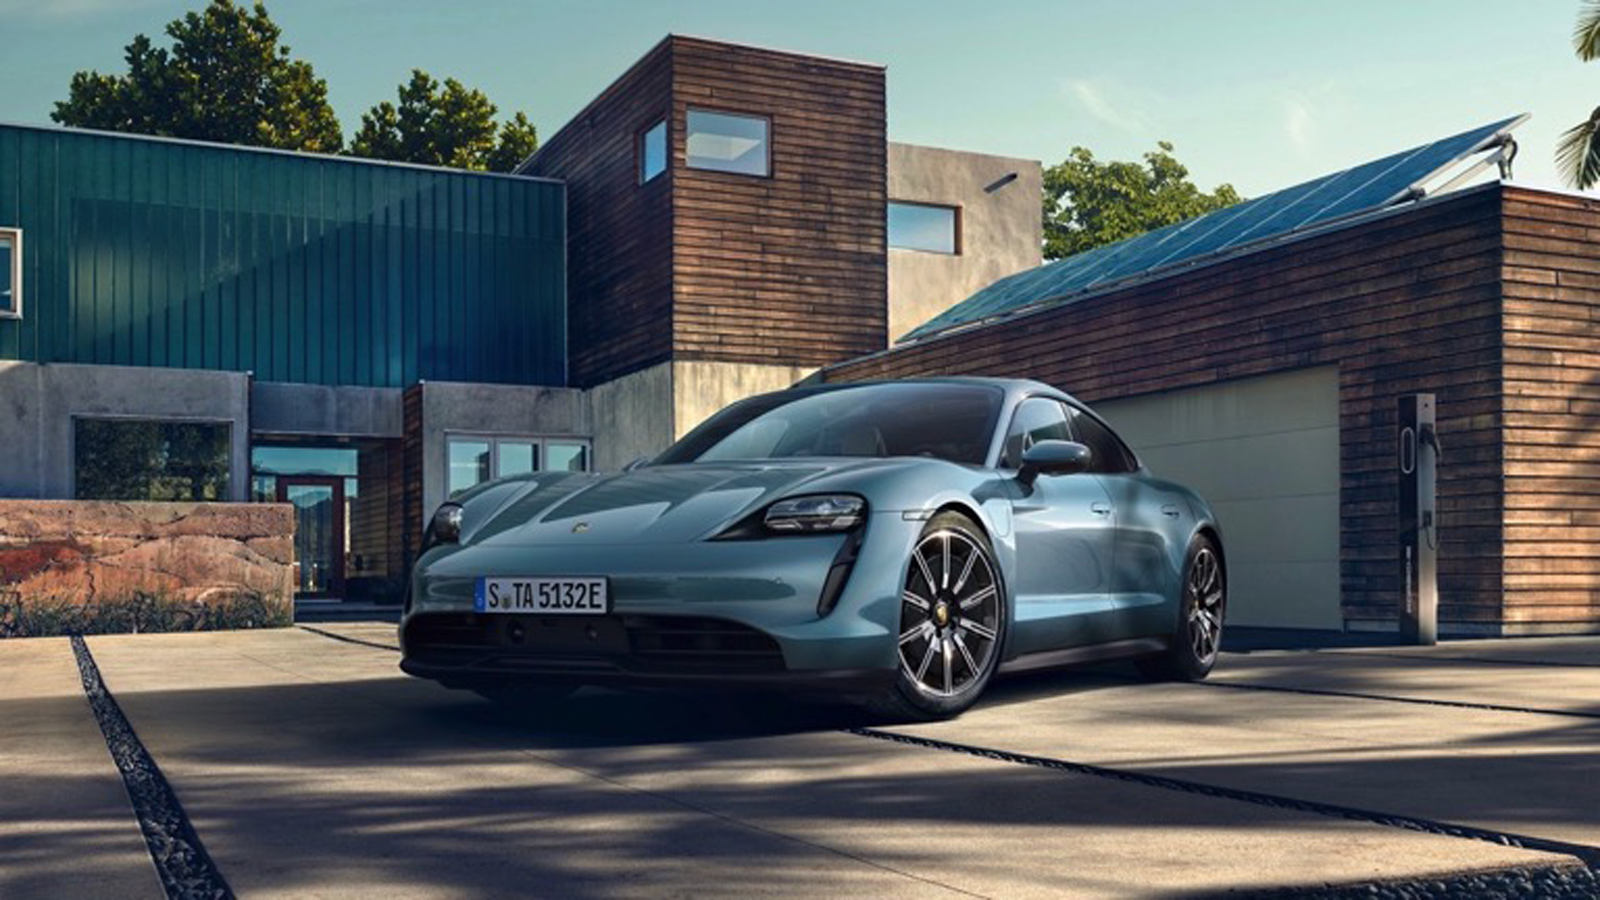 U prodaju sljedeće godine stiže i Porscheov prvi posve električni automobil, Taycan. Službeno predstavljen ove godine, Taycan se nameće kao do sada najkonkretnija konkurencija Teslinom Modelu S, od kojeg je Taycan u sve više usporednih testova nadmoćniji. Taycan je također brže odvozio krug Nürburgring Nordschleifea, 22 kilometarske trkaće staze, što je Teslu nagnulo na izradu još sportskijeg Modela S, koji bi u prodaju trebao stići (možda) sljedeće godine.